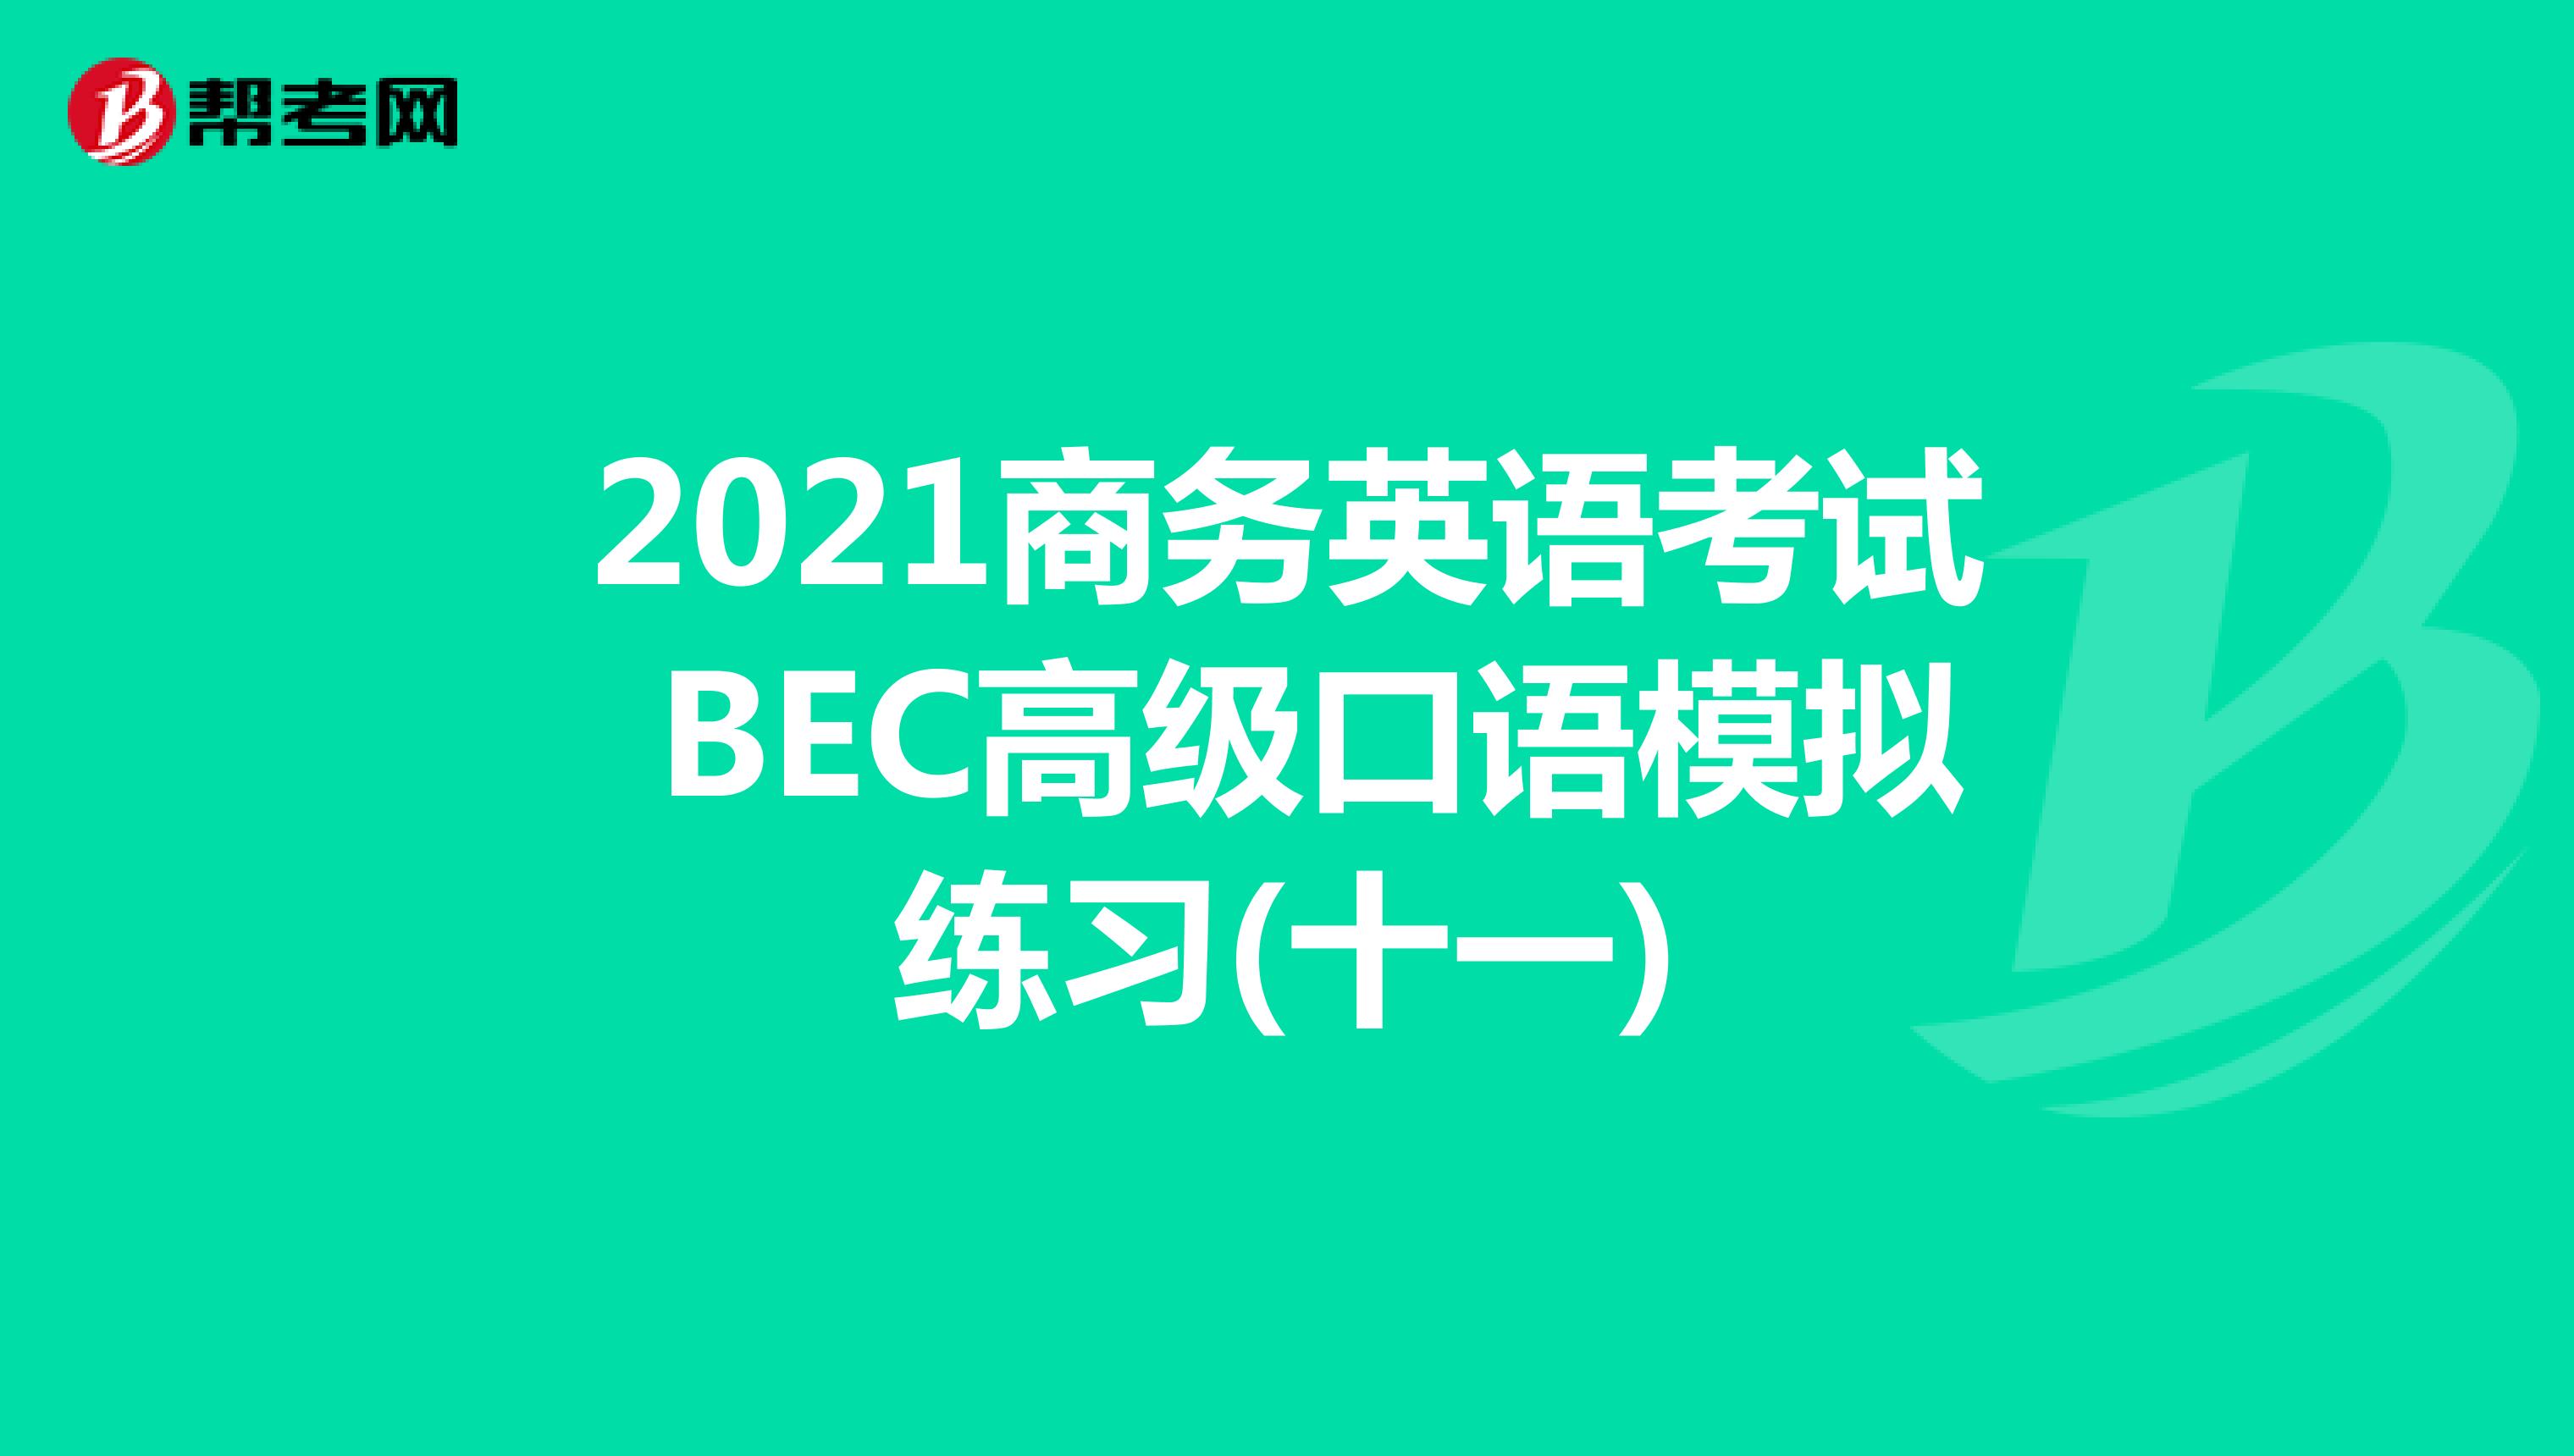 2021年商务英语考试BEC高级口语模拟练习(十一)